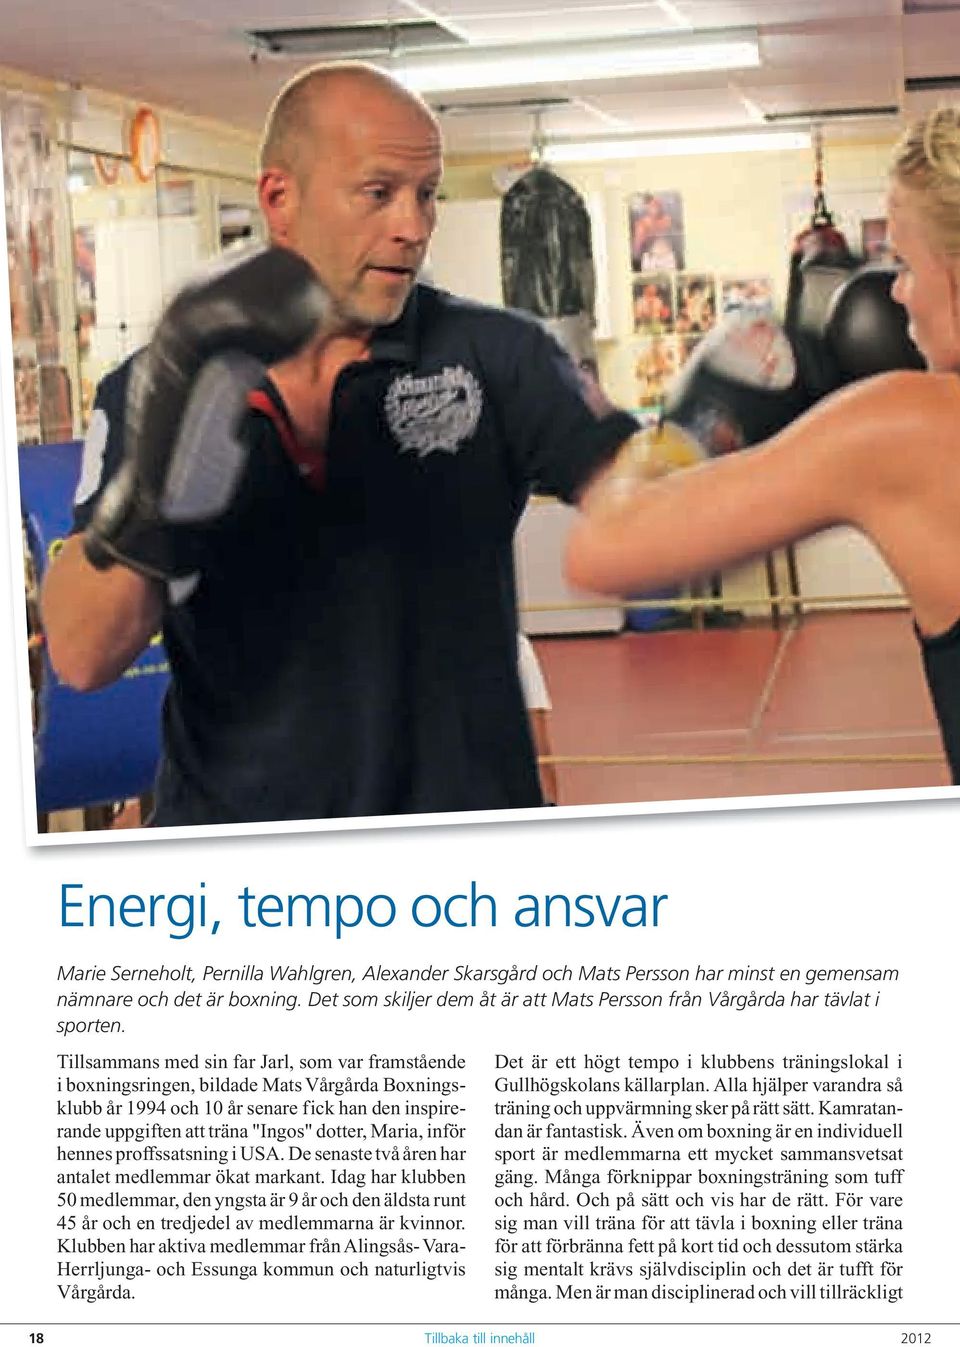 Tillsammans med sin far Jarl, som var framstående i boxningsringen, bildade Mats Vårgårda Boxningsklubb år 1994 och 10 år senare fick han den inspirerande uppgiften att träna "Ingos" dotter, Maria,